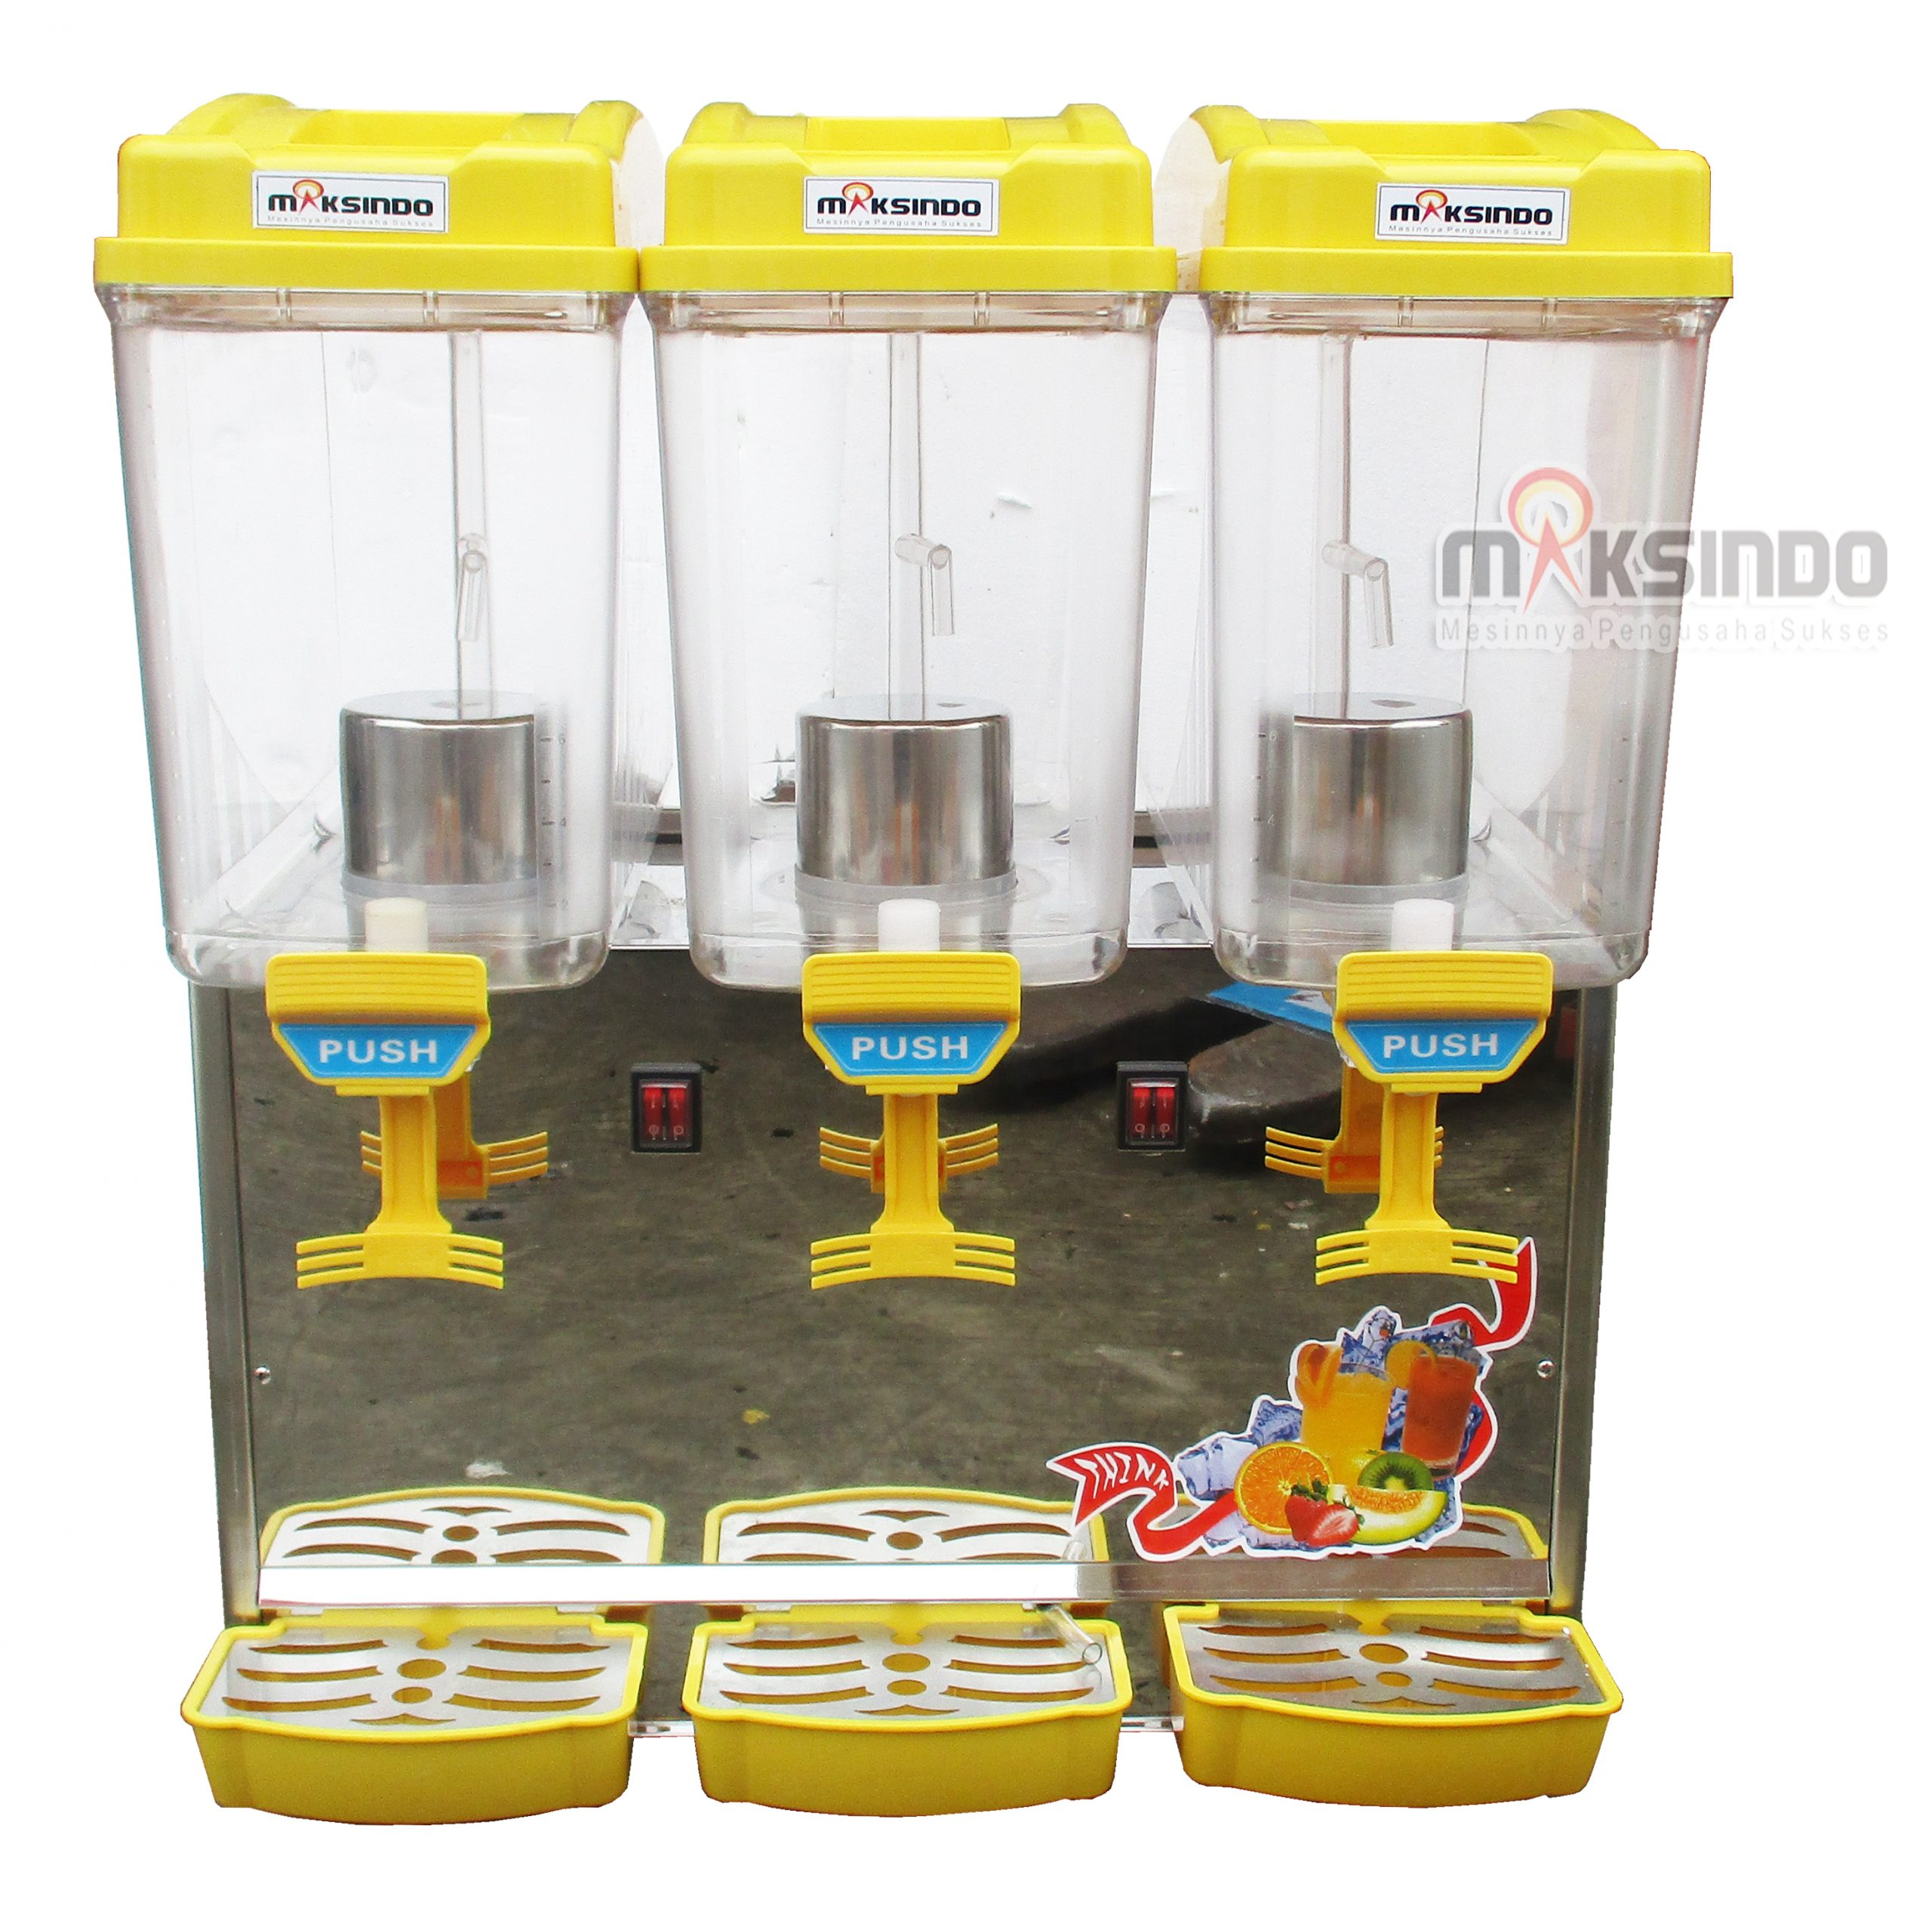 Jual Mesin Juice Dispenser 3 Tabung (17 Liter) – DSP17x3 di Banjarmasin